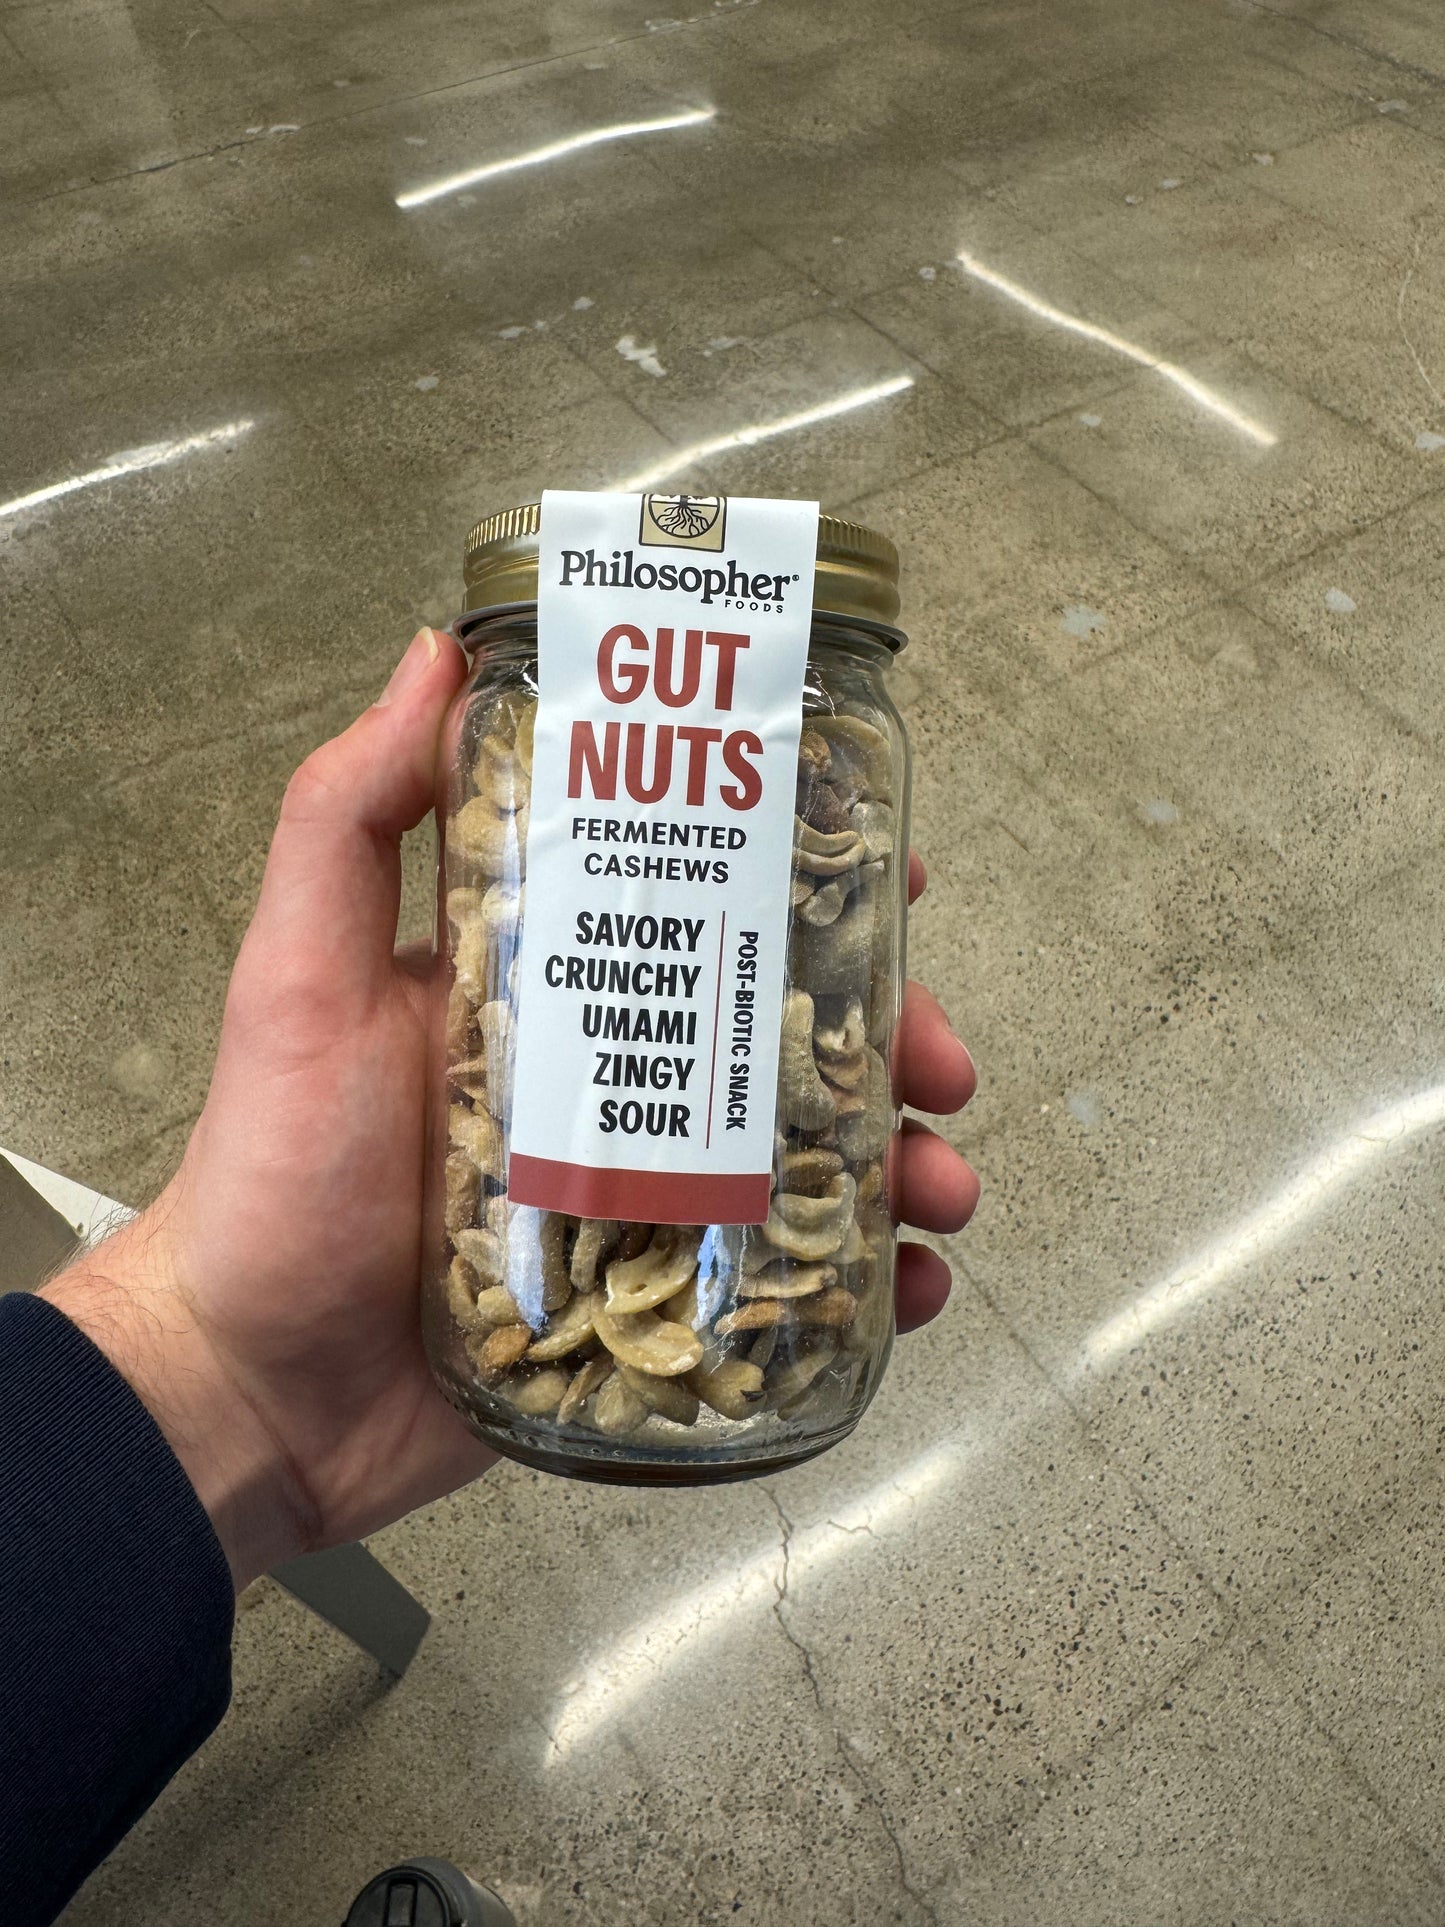 GUT NUTS: FERMENTED CASHEWS